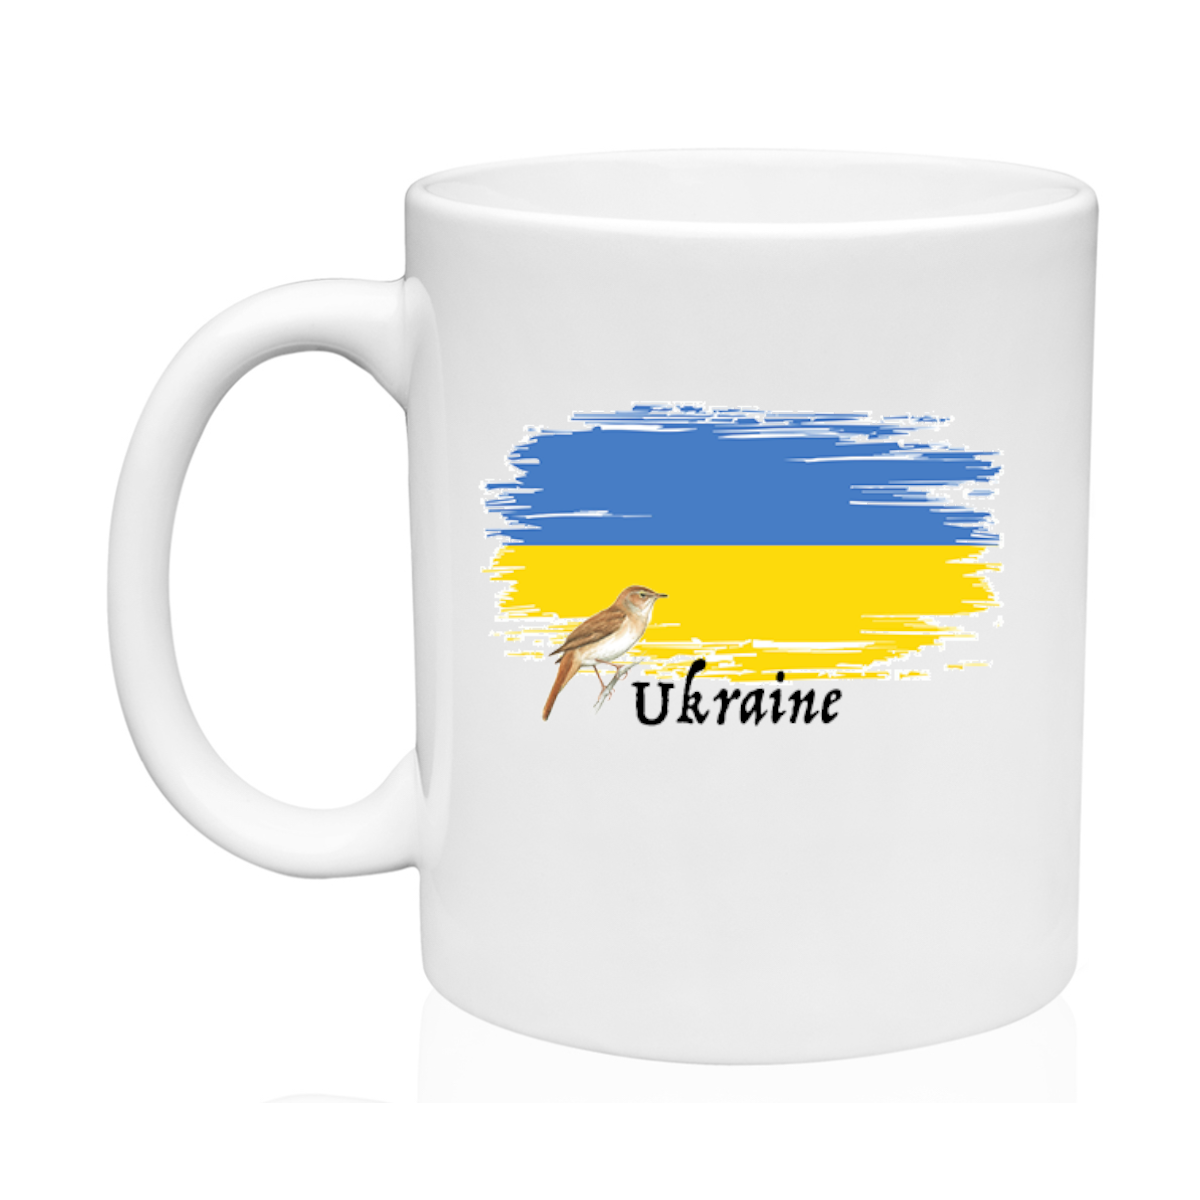 AGAD Turista (I Love Ukraine Ceramic Mug)